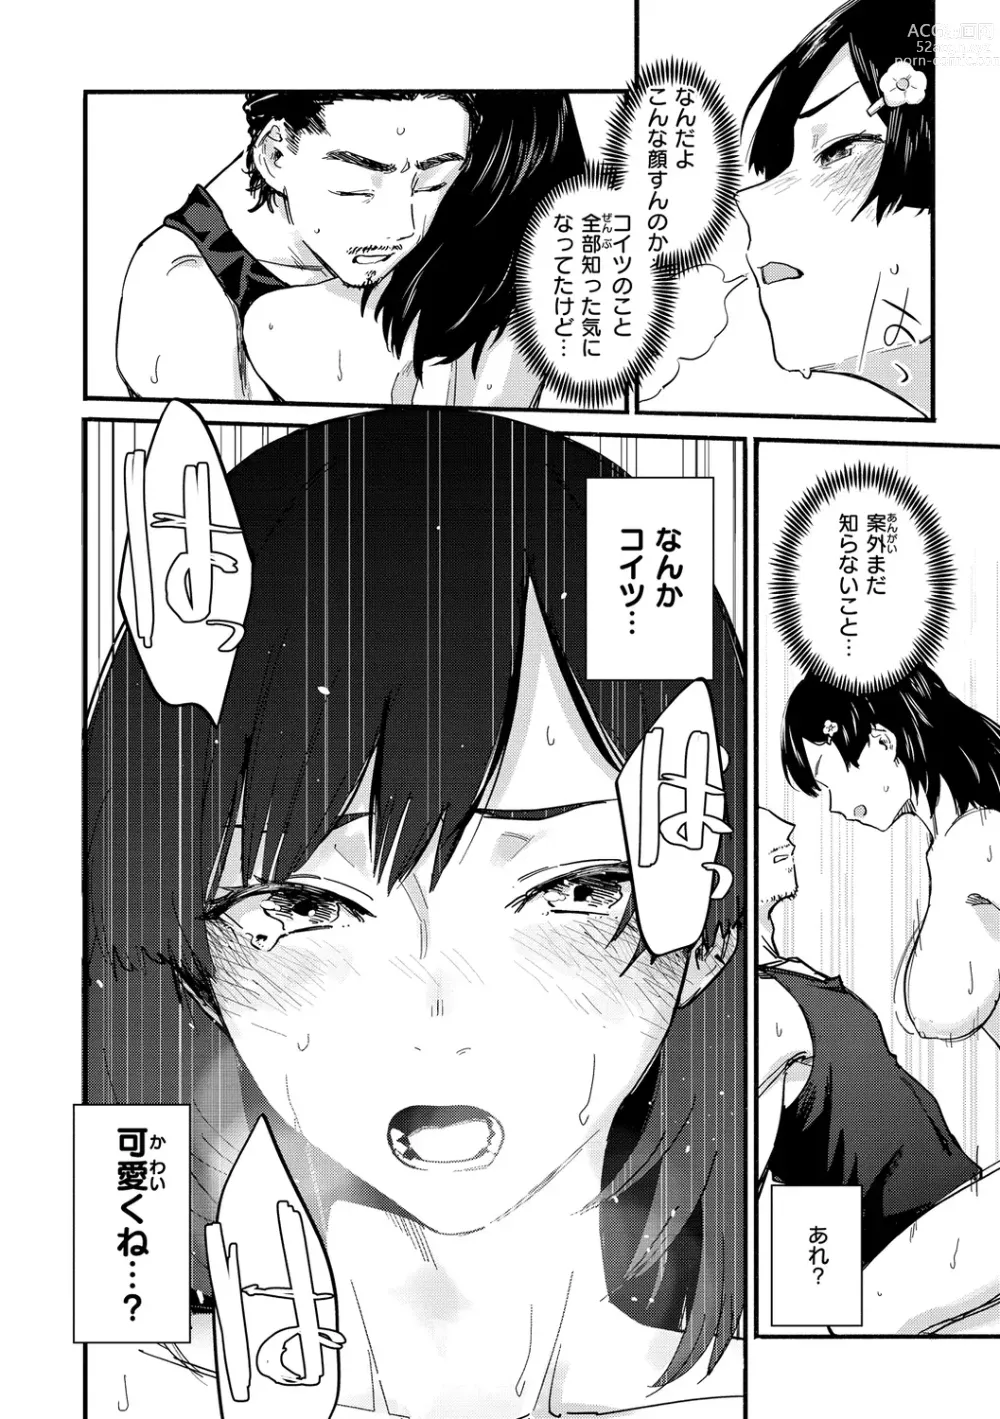 Page 142 of manga Yabai Onna